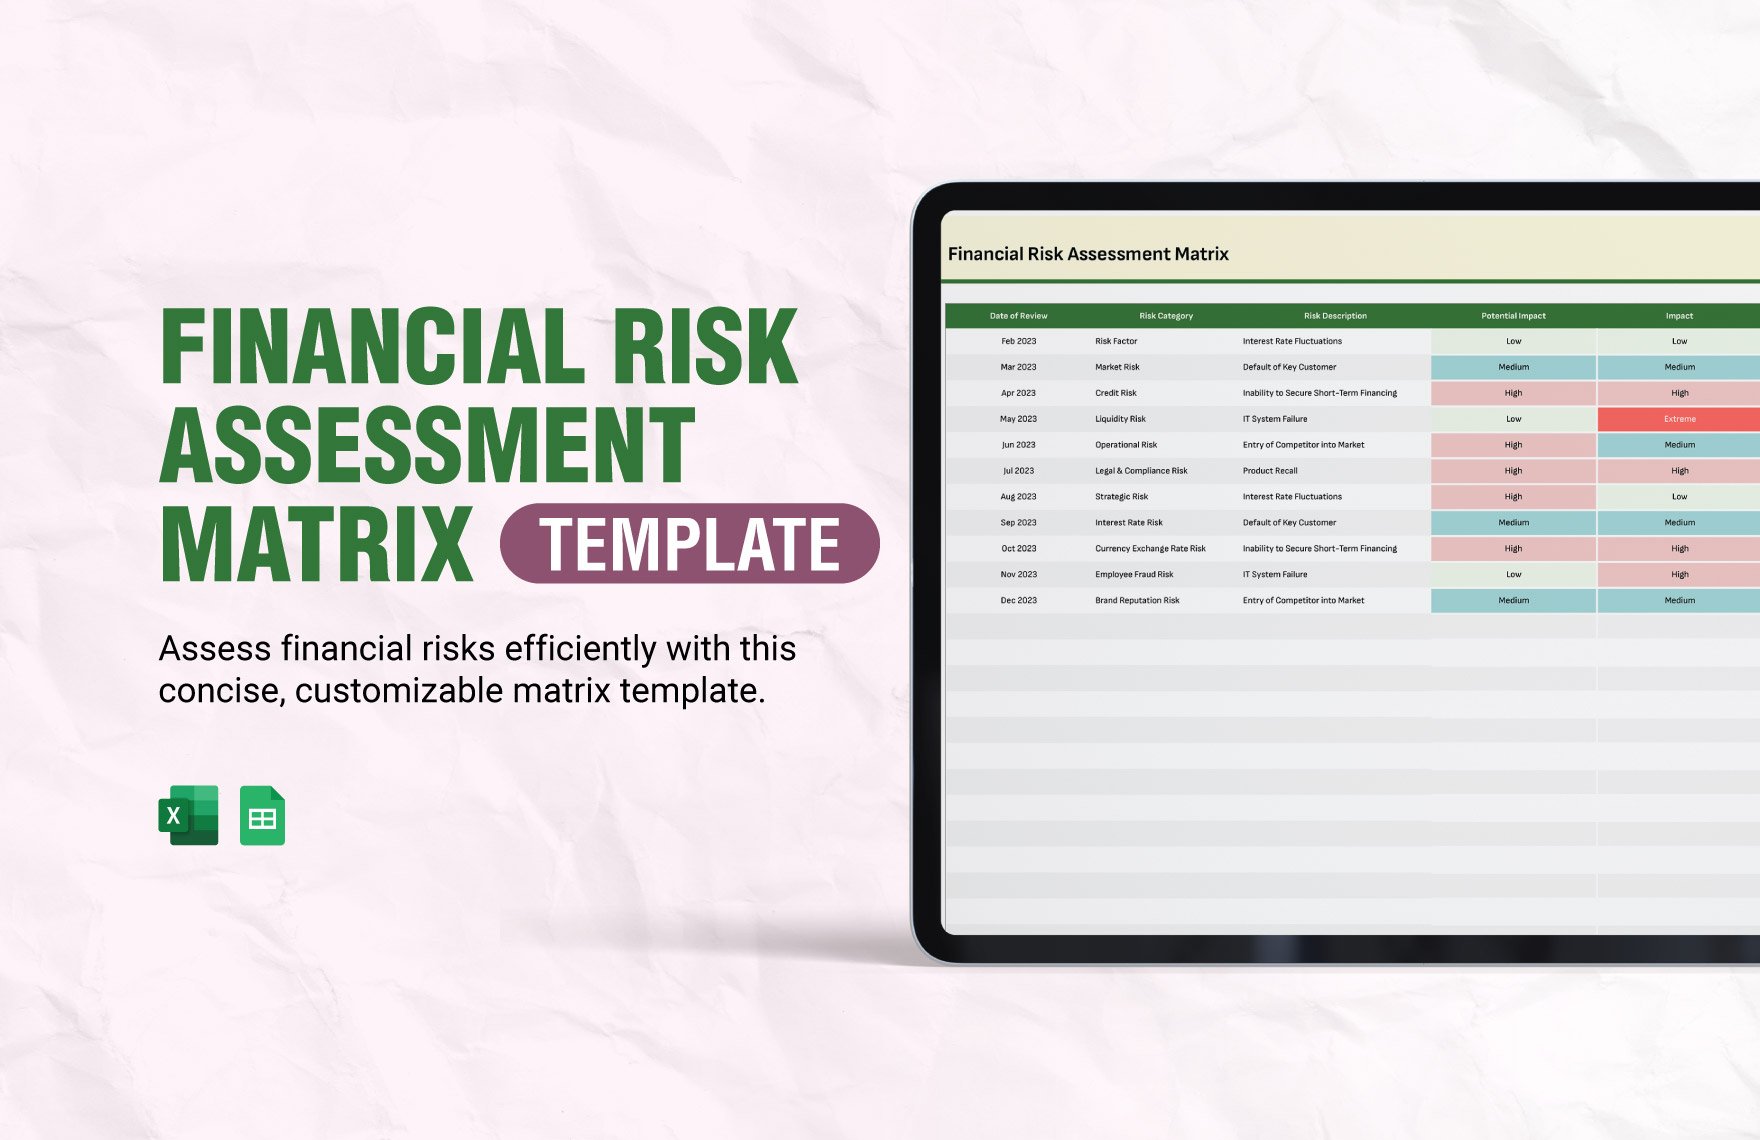 Financial Risk Assessment Matrix Template